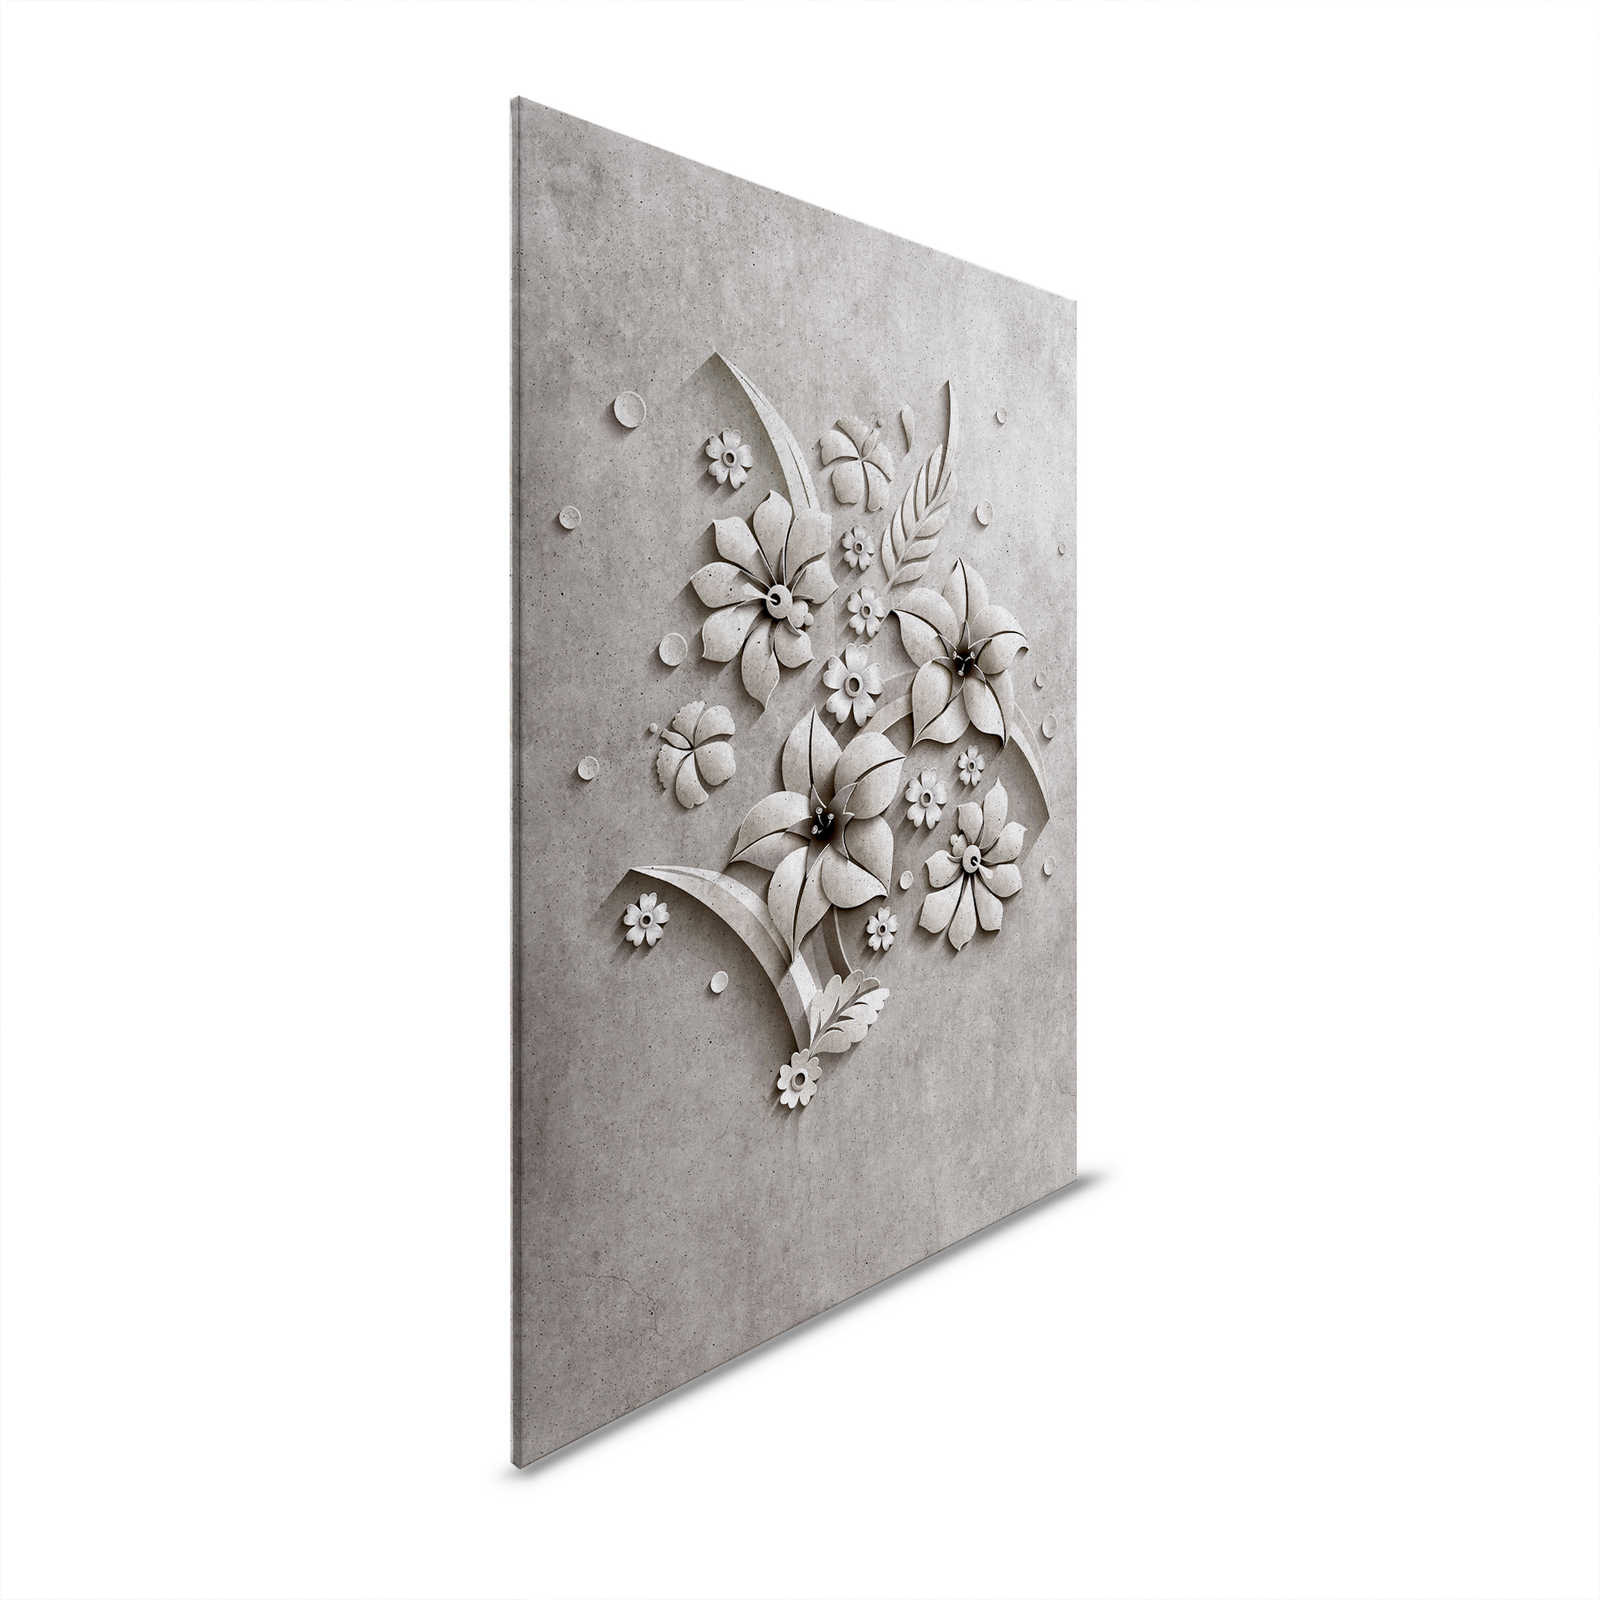 Relief 1 - Leinwandbild in Beton Struktur eines Blütenrelief – 0,90 m x 0,60 m
